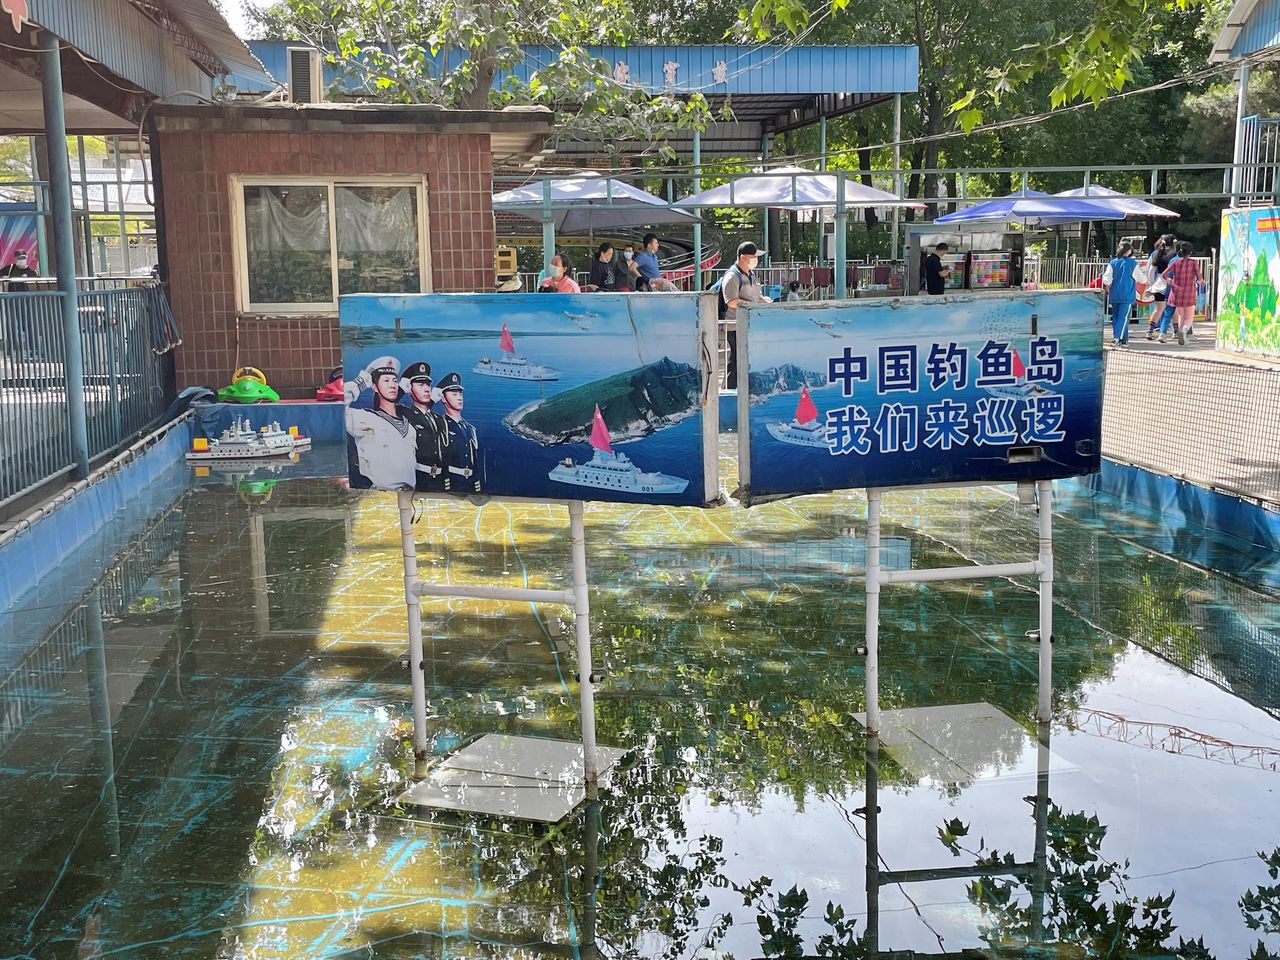 Een attractie met oorlogsbootjes in het Shuangxiu-park in Beijing. „Kom patrouilleren rond de Chinese Diaoyu-eilanden”, staat op het bord.